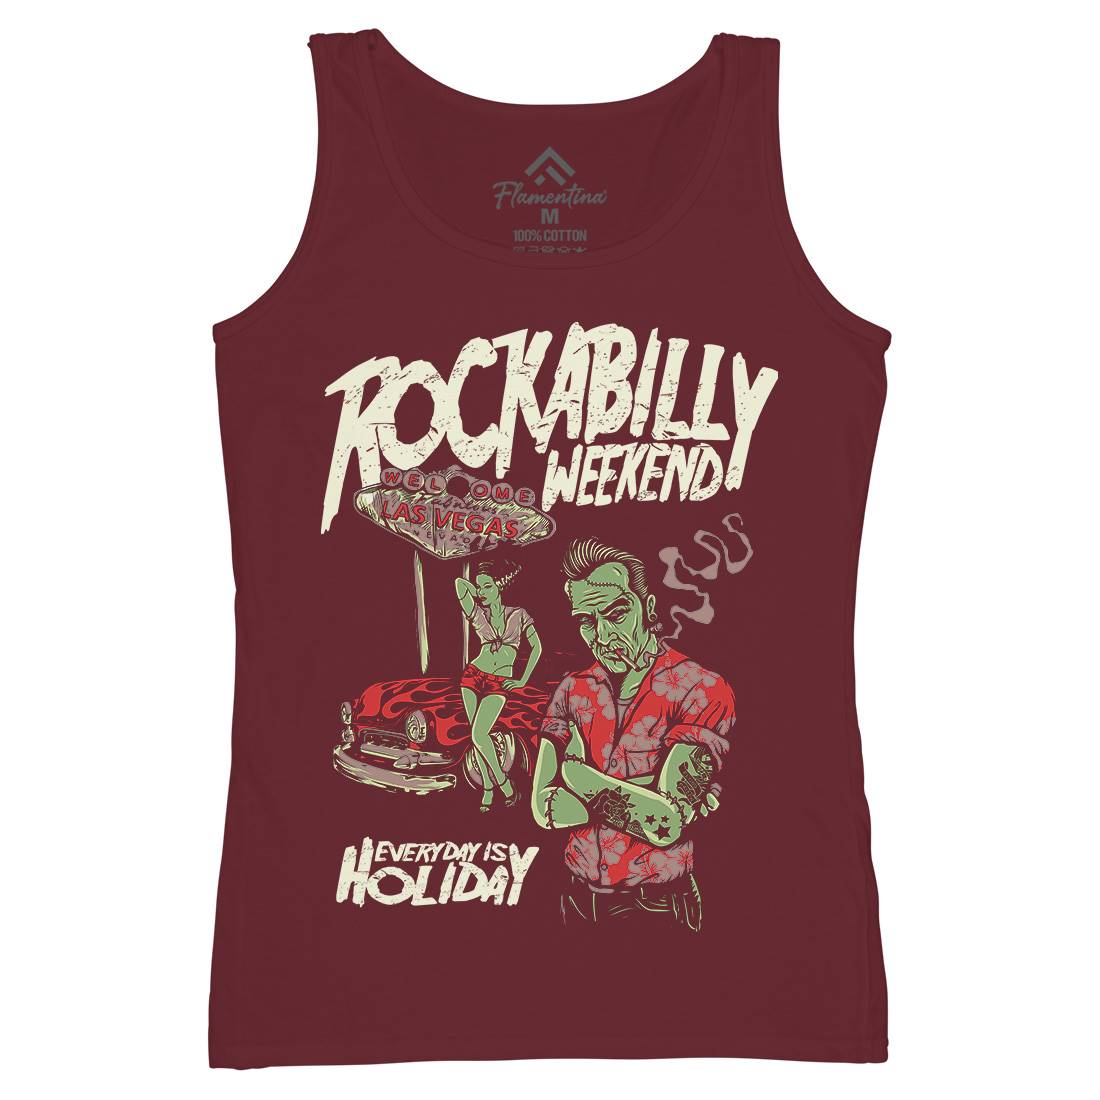 Rockabilly Womens Organic Tank Top Vest Music D072